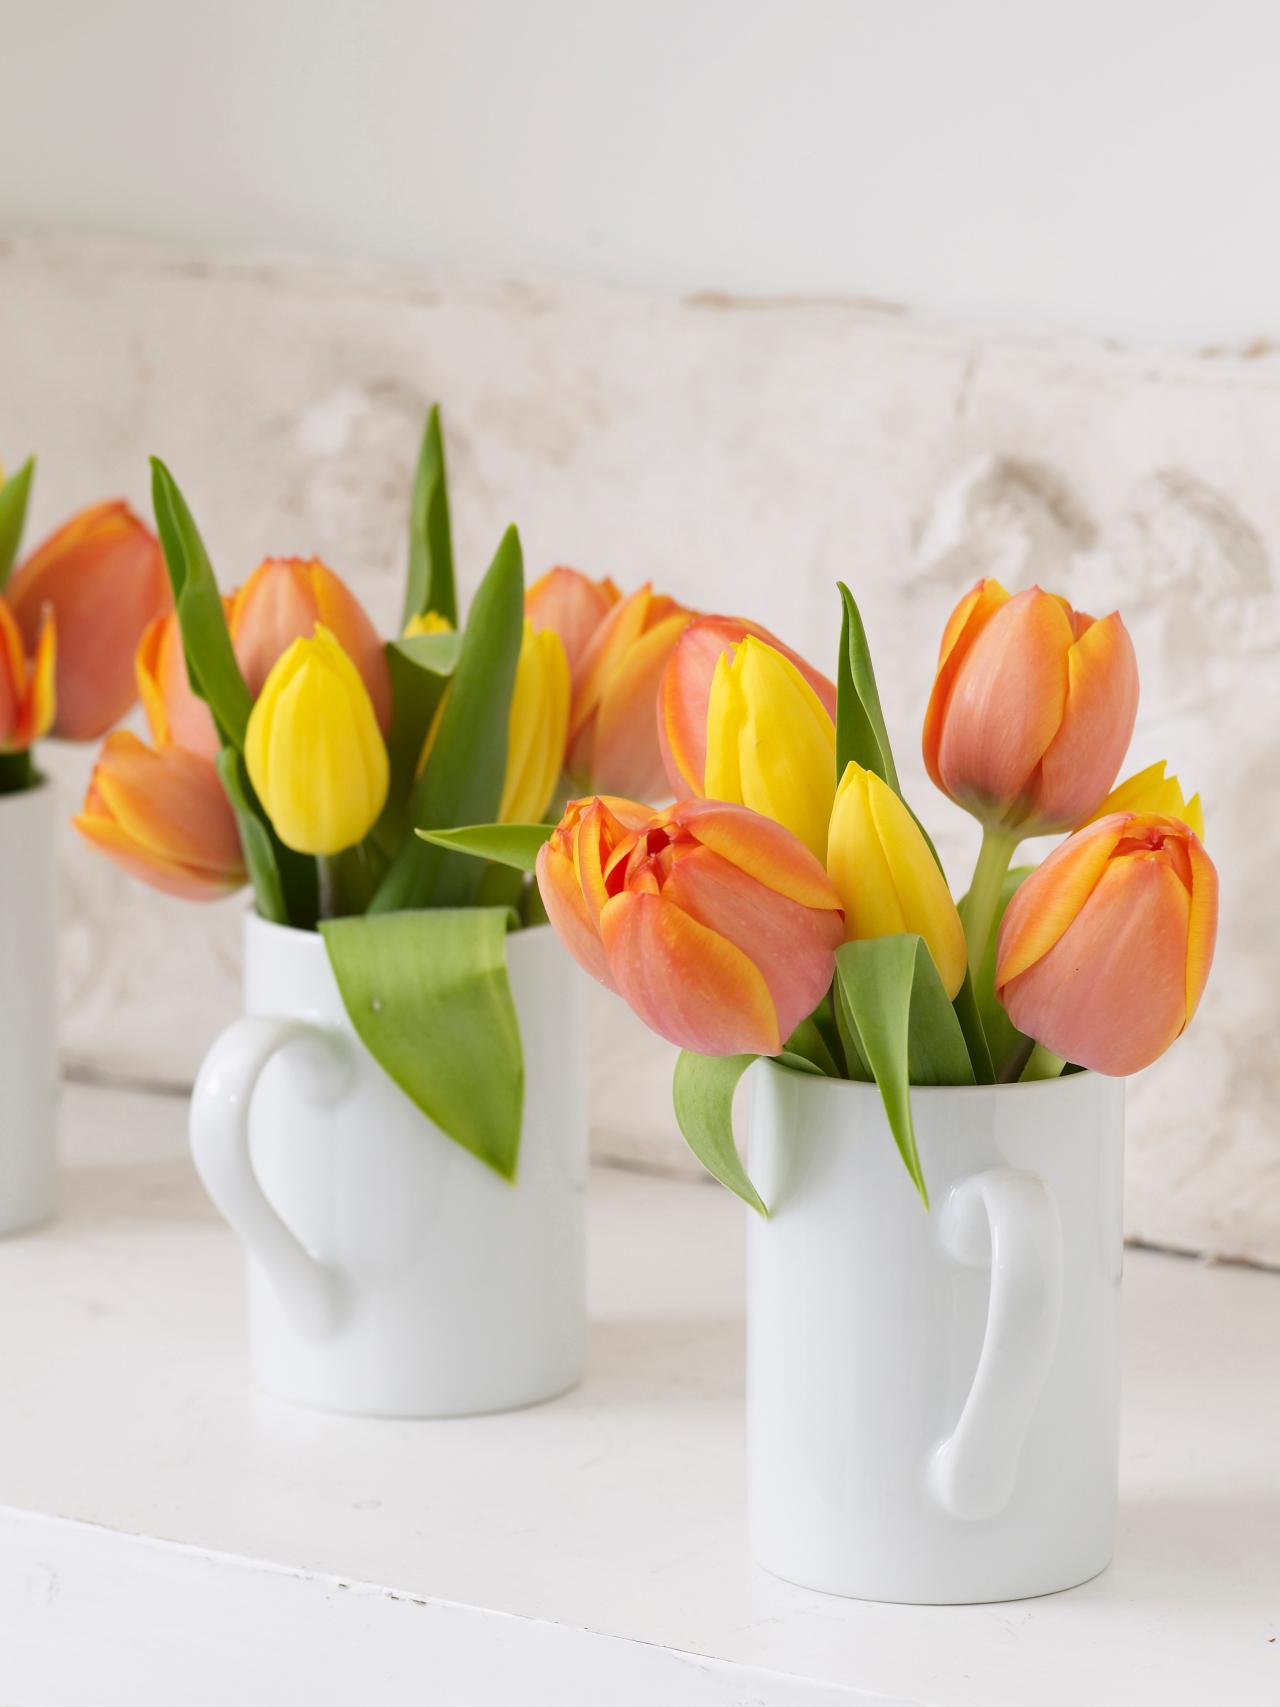 printemps maison déco jardin fleurs tulipes moderne décoration tasse orange